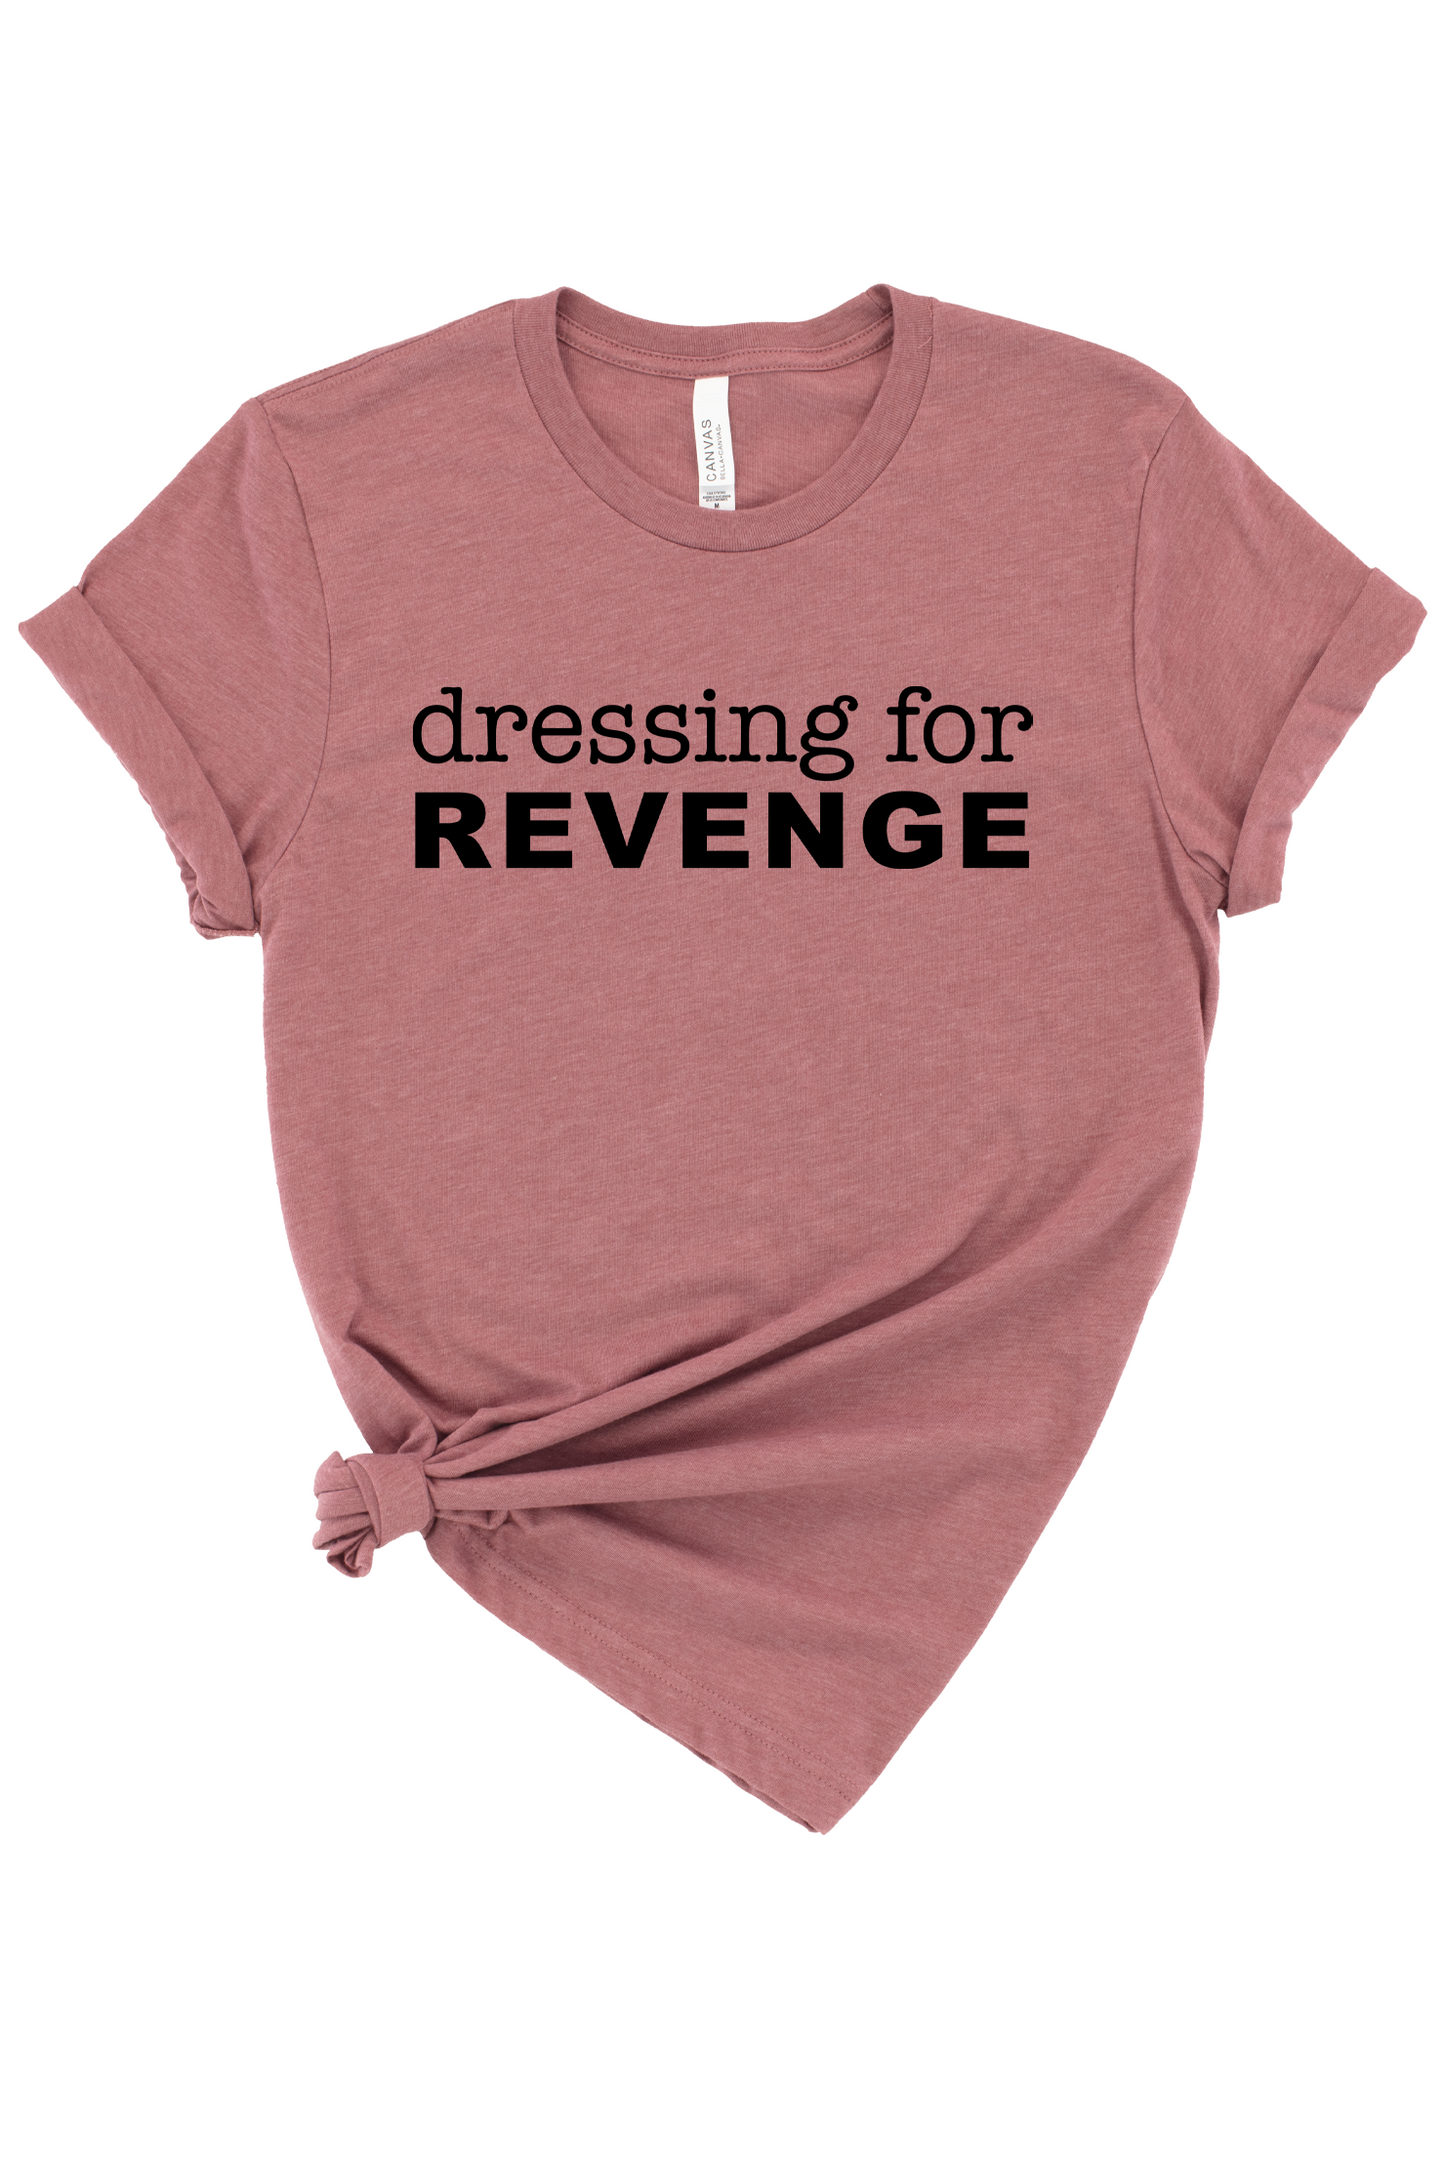 Dressing For Revenge Graphic Tee